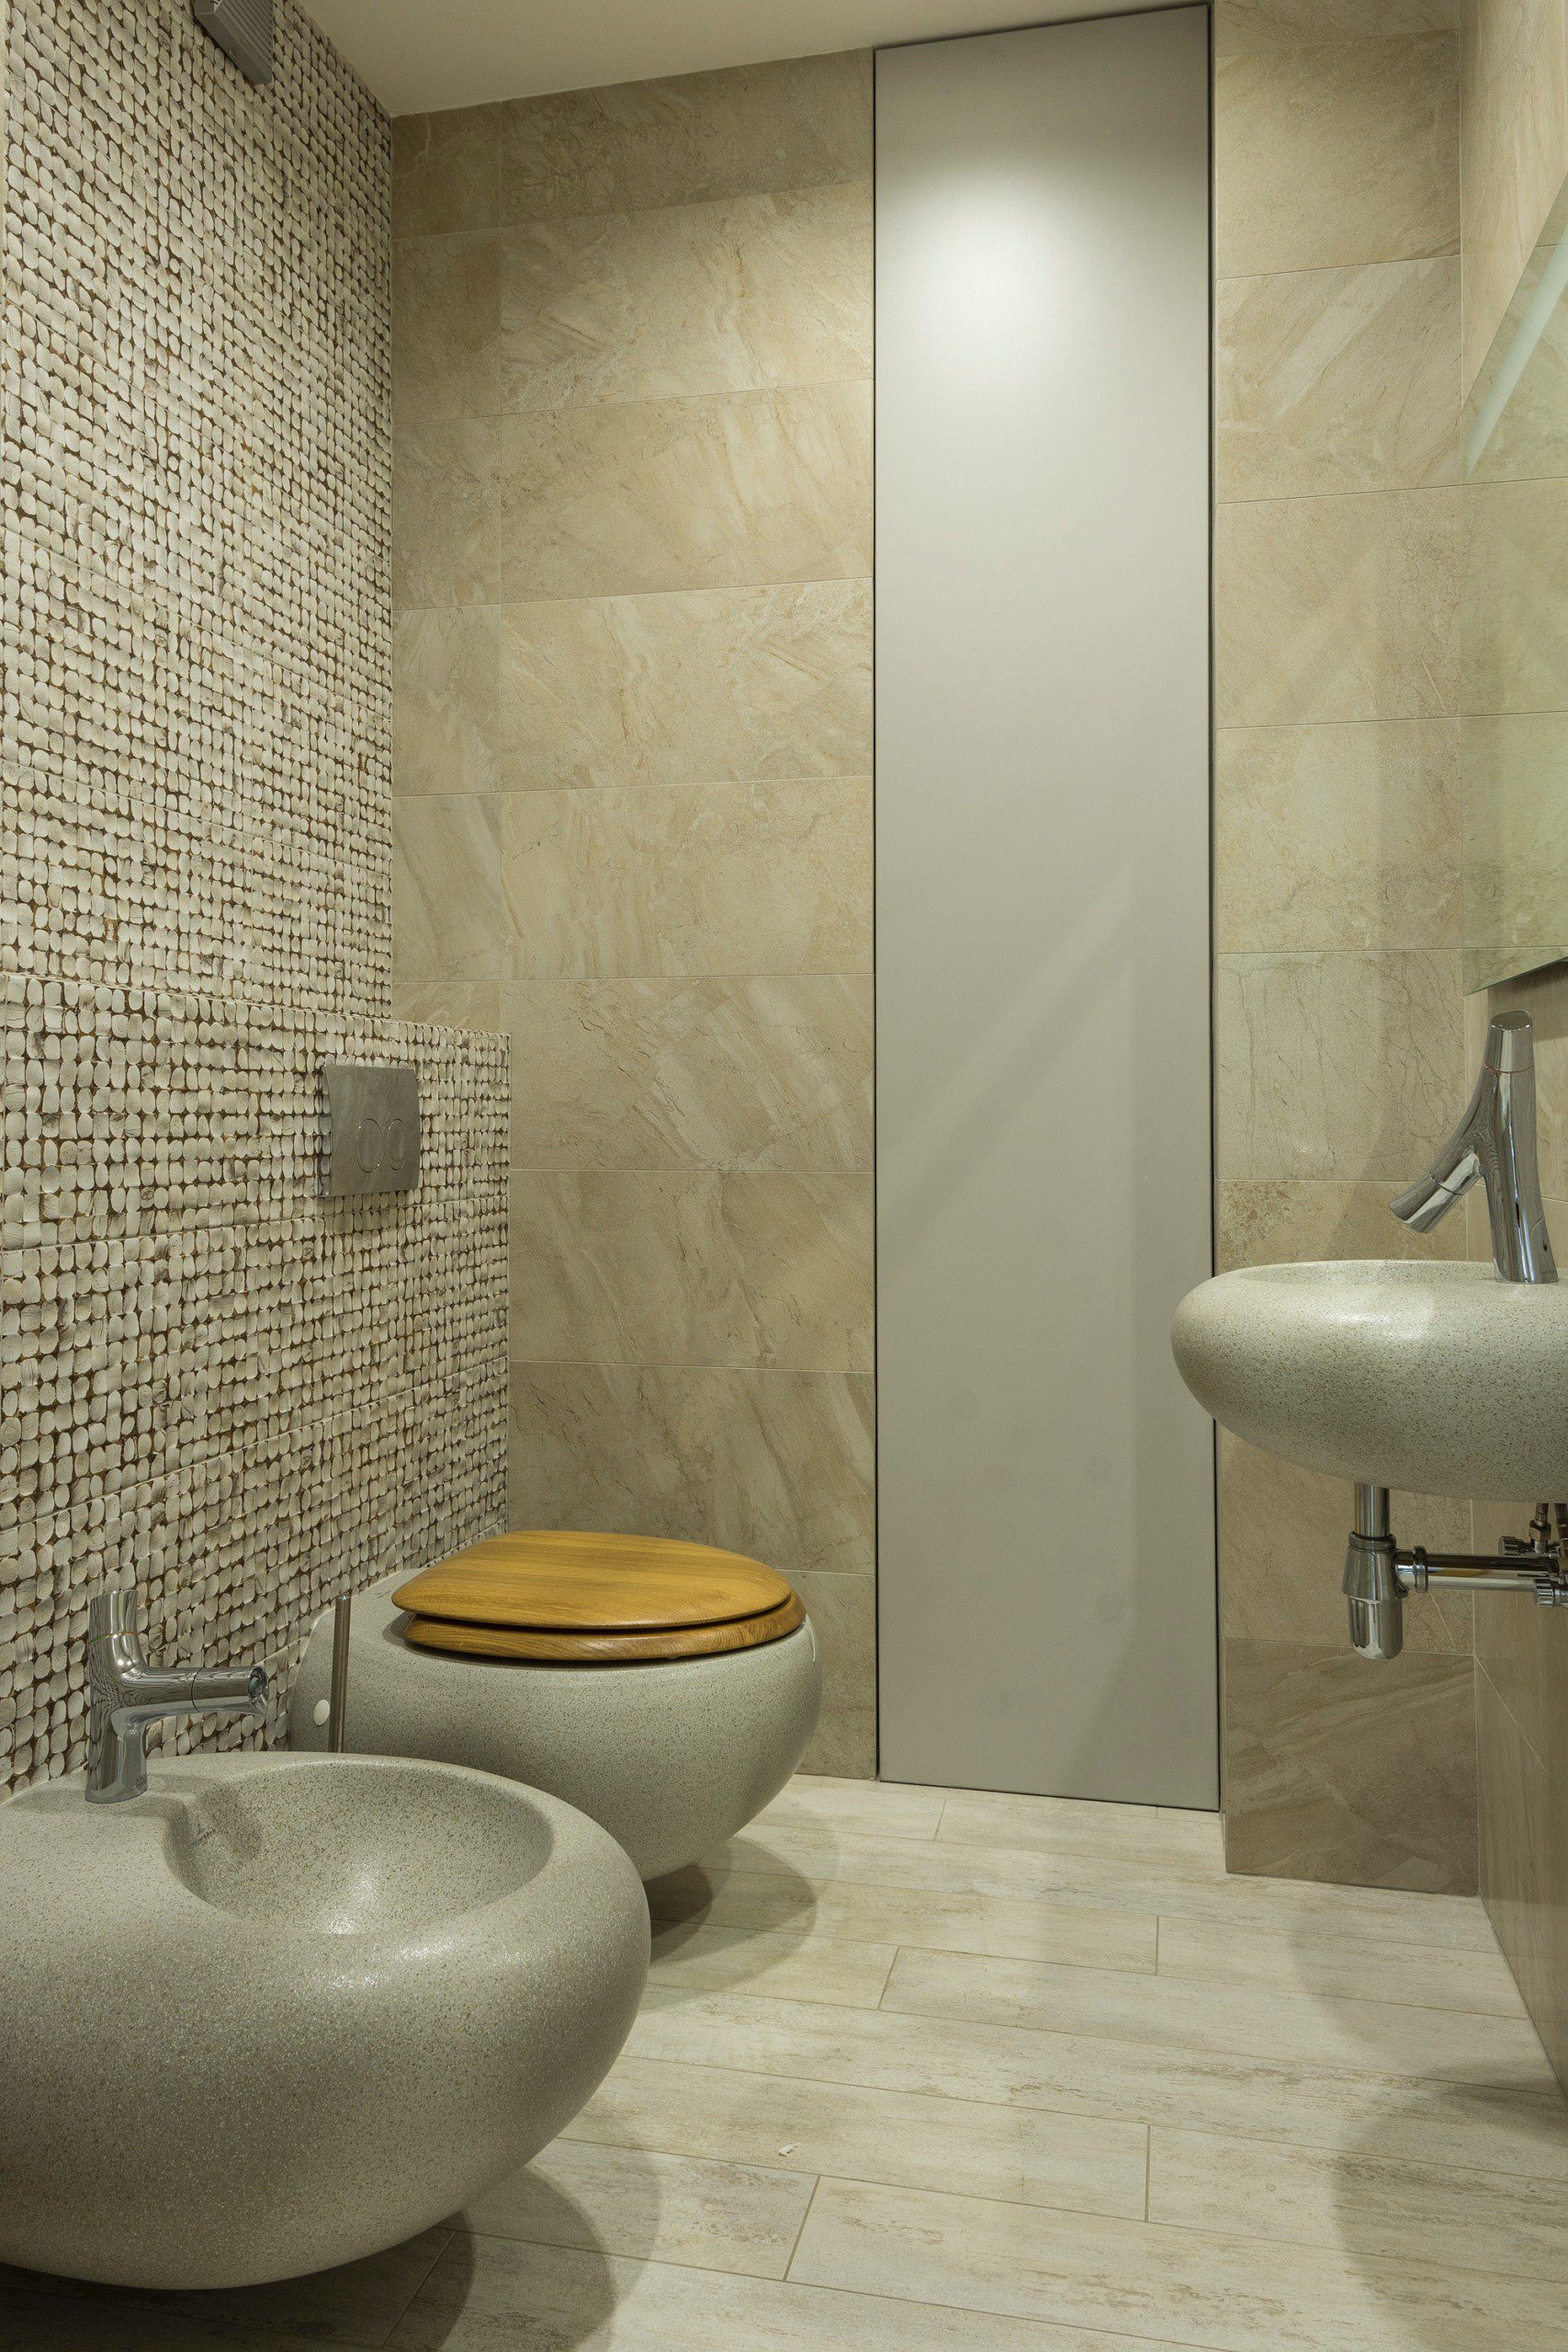 Imagem de um lavabo moderno com pedras e na tonalidade cinza com marrom e alguns elementos de madeira. Conta uma pia em formato retangular e um vaso sanitário com tampa de madeira.